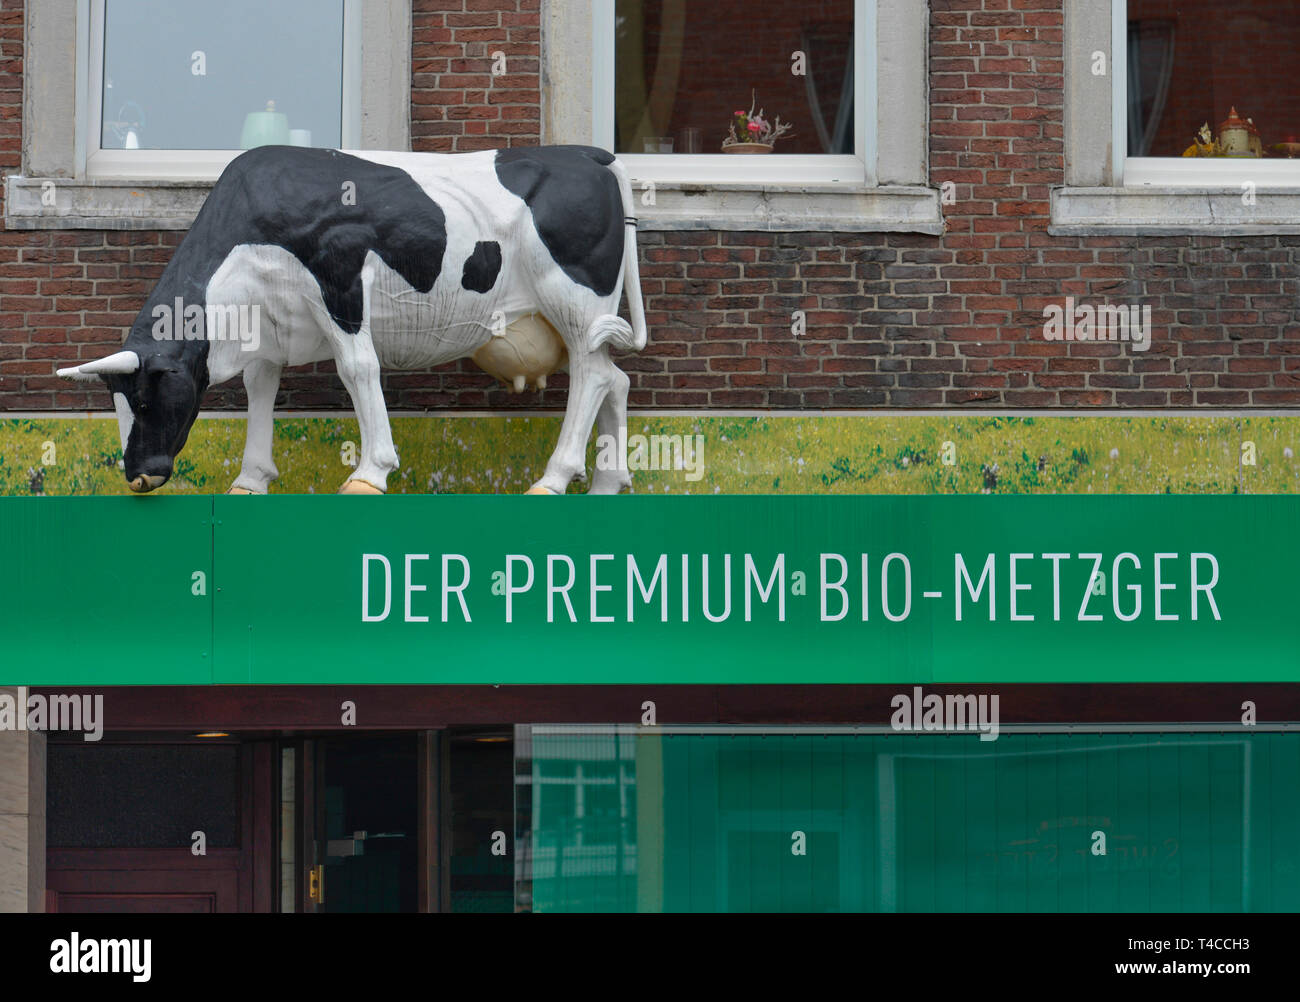 Kuh Biometzger Stoebe, Werbung, Sandkaulstrasse, Aachen, Nordrhein-Westfalen, Deutschland, Stöbe Stock Photo